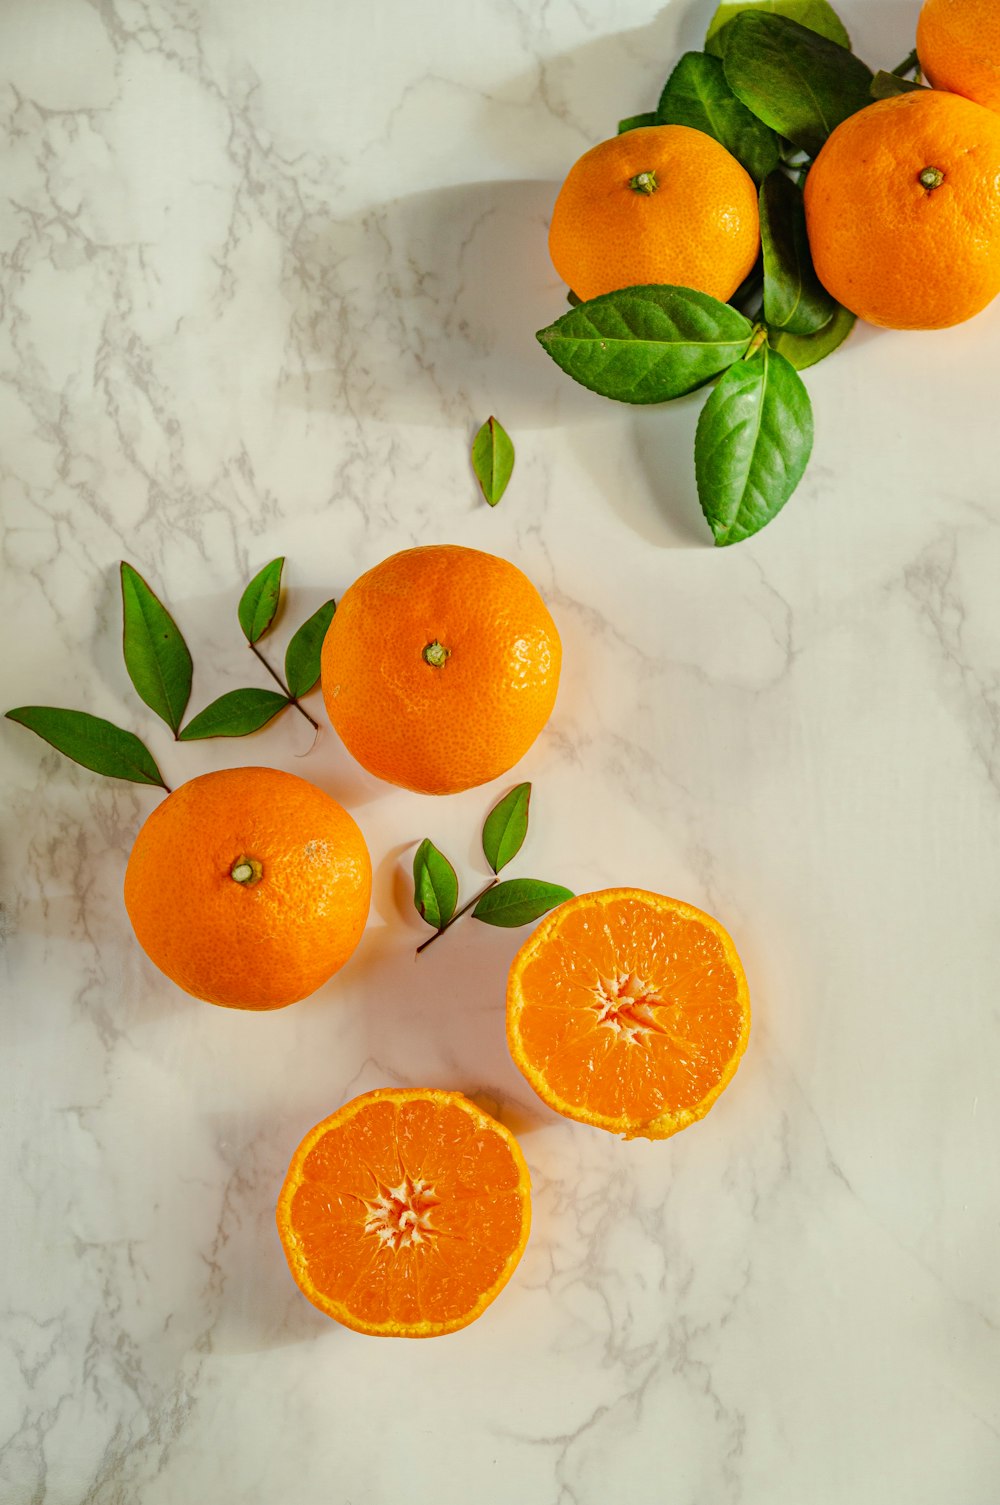 sliced orange fruits on white surface